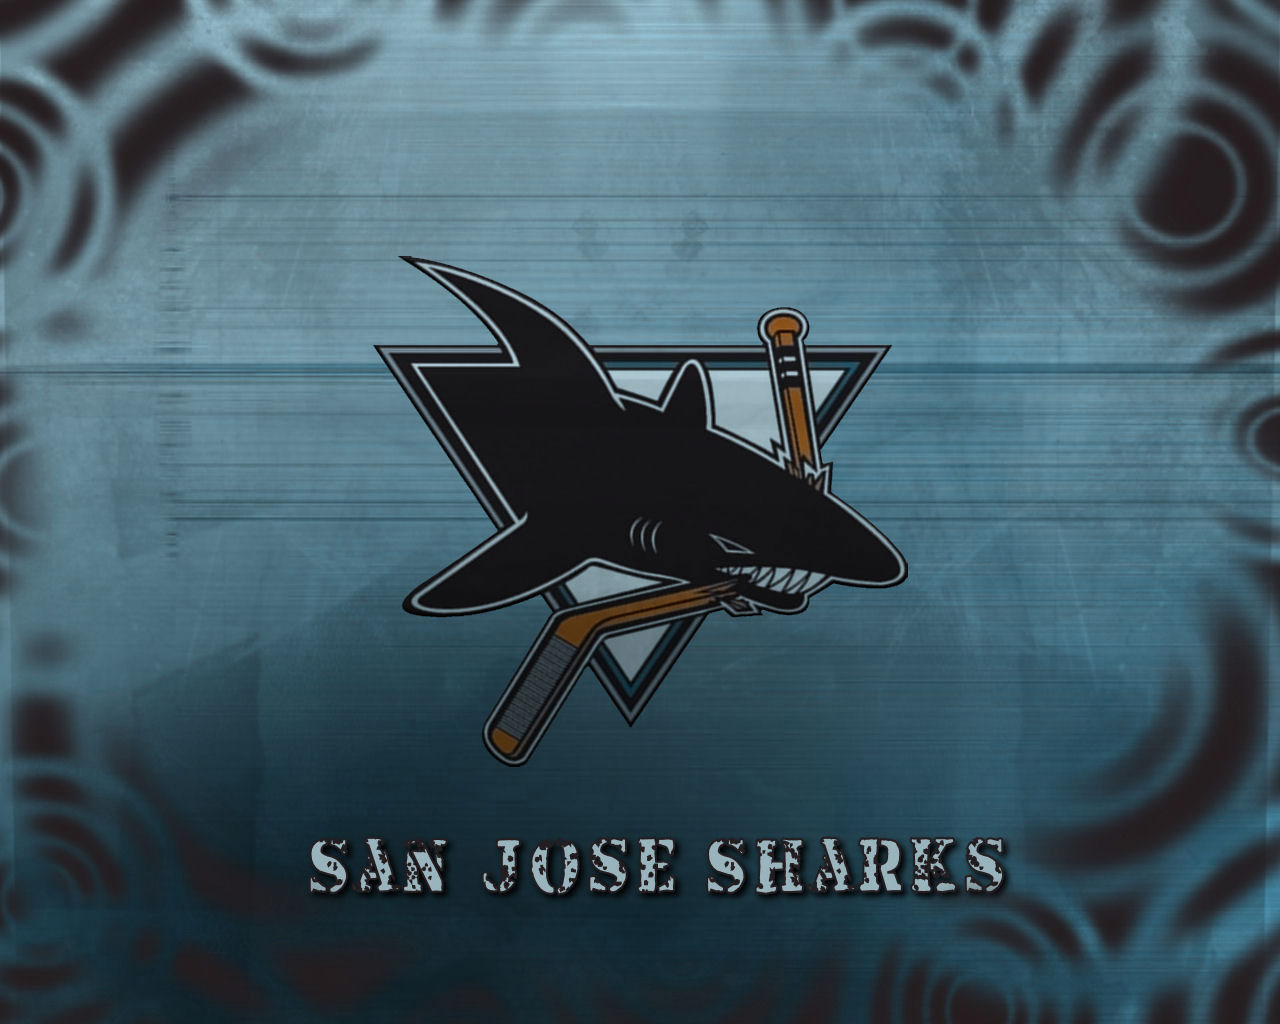  san jose sharks wallpapers san jose sharks backgrounds san jose 1280x1024